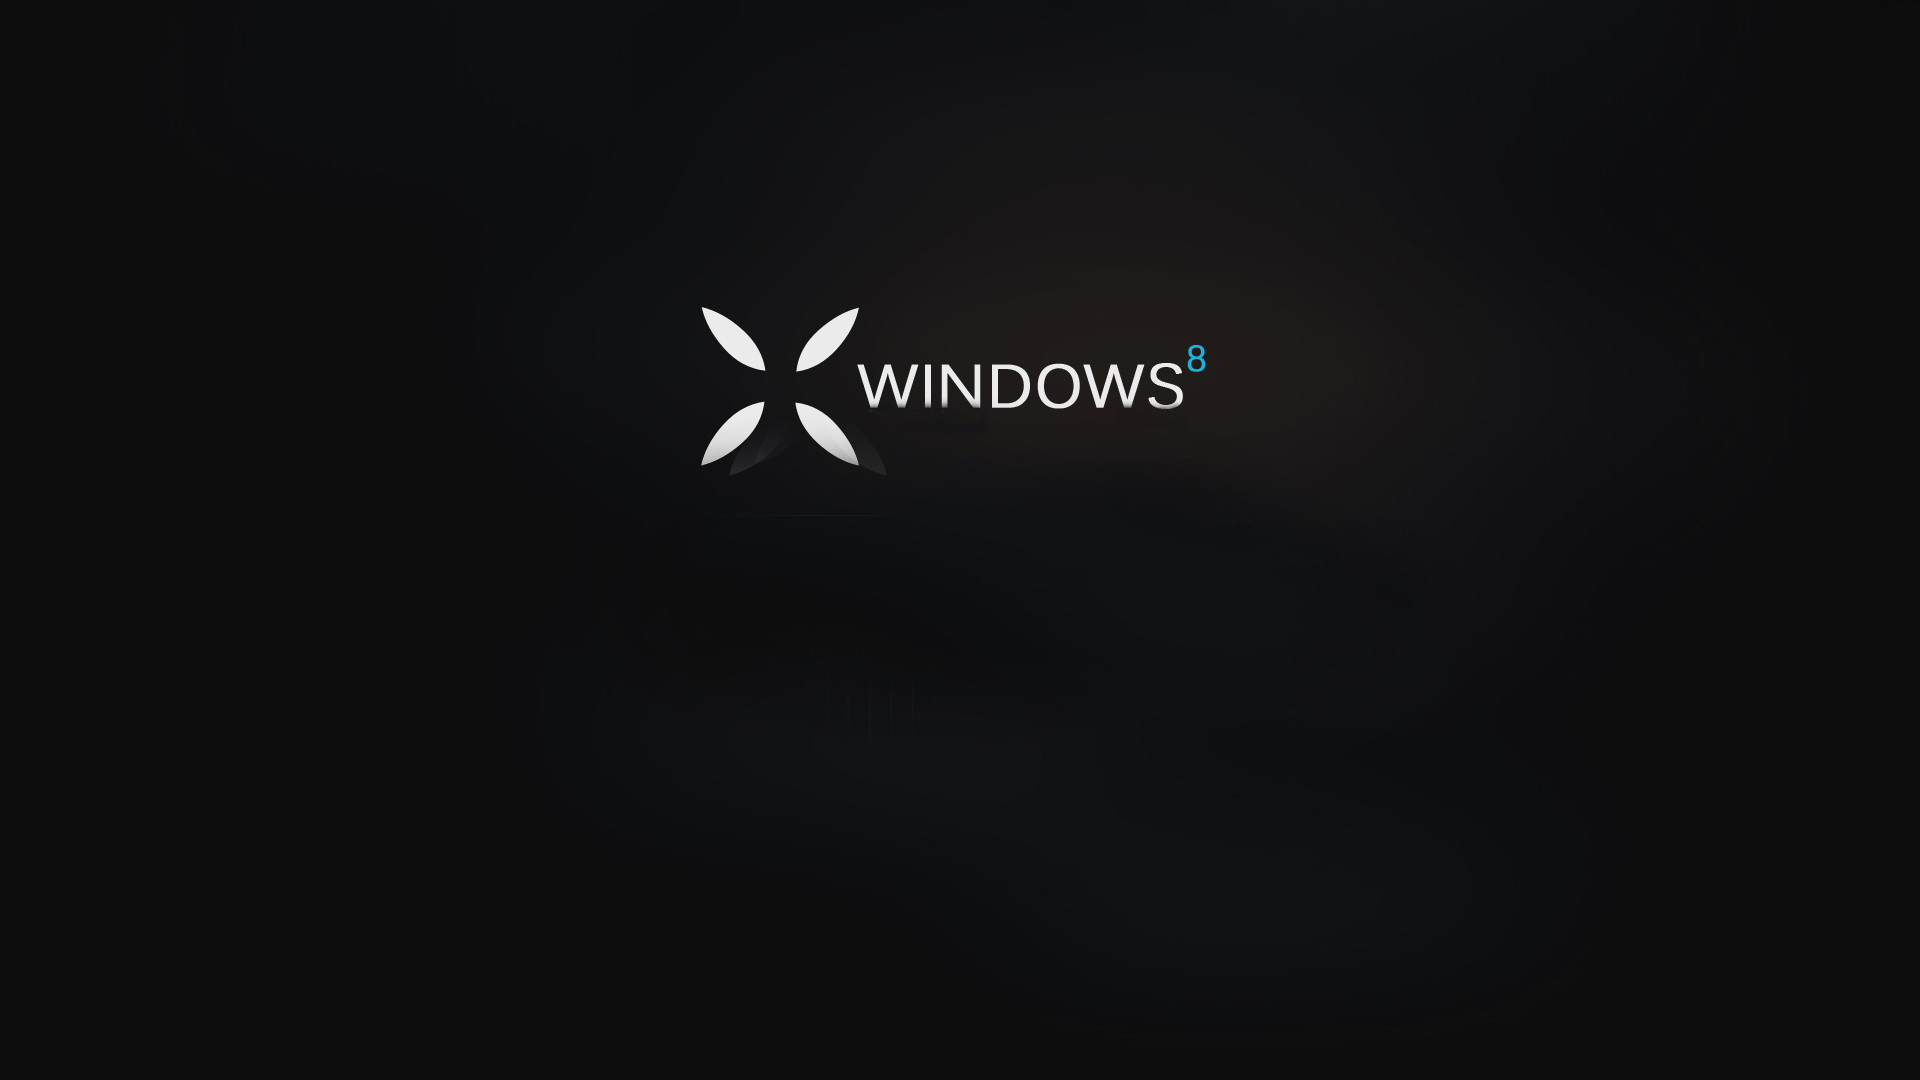 1920x1080 Windows 10 Desktop Is Black 27 Free Hd Wallpaper. Windows 10 Desktop Is  Black 27 Free Hd Wallpaper